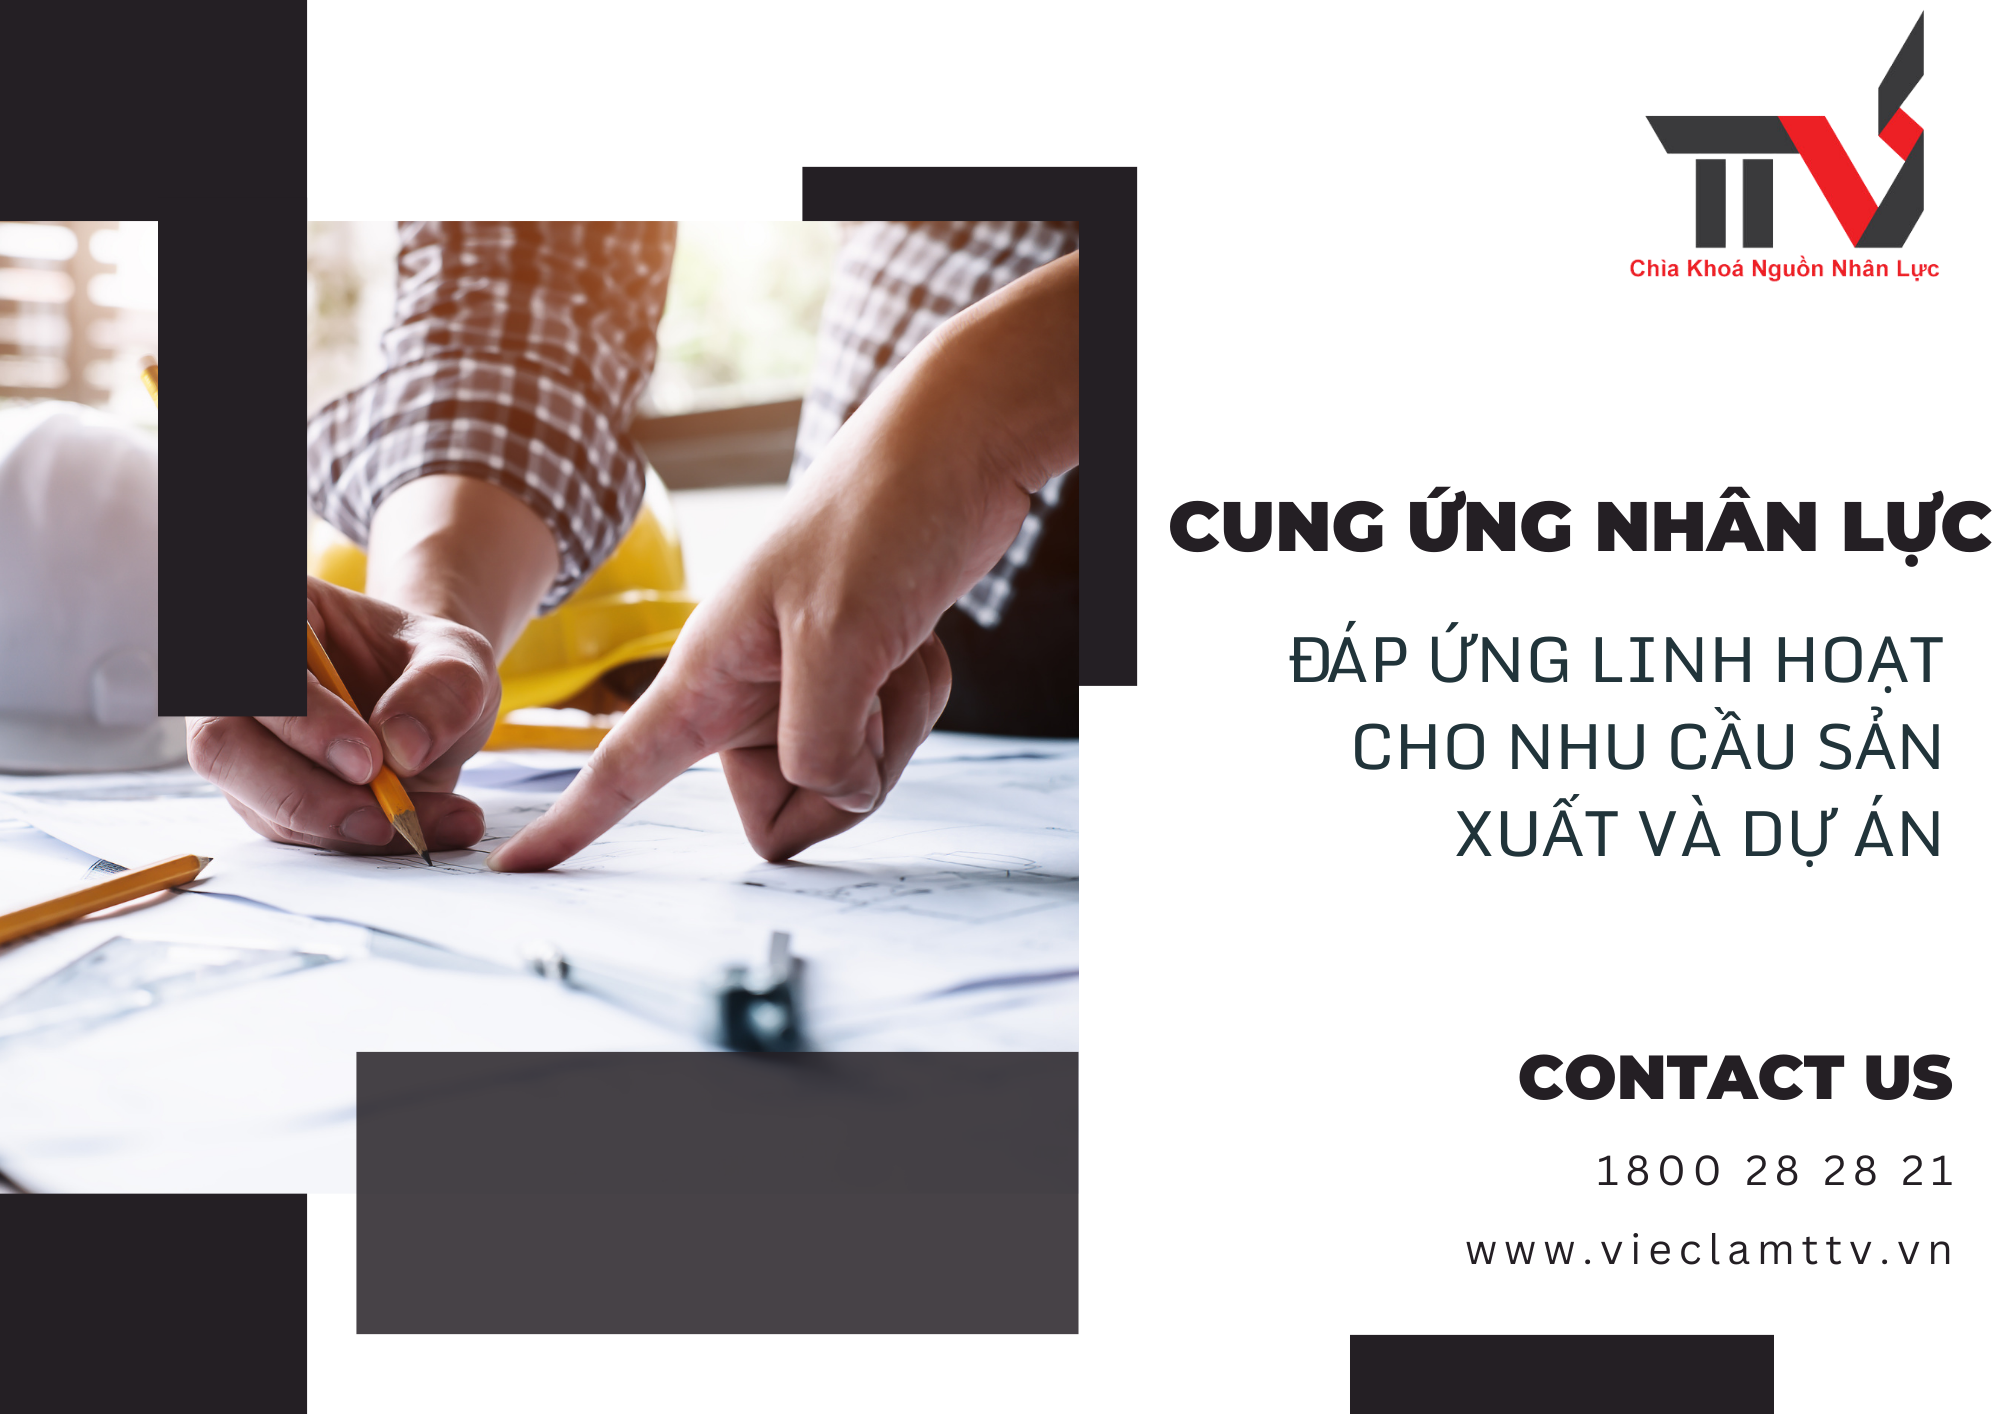 Cung ứng nhân lực: Đáp ứng linh hoạt cho nhu cầu sản xuất và dự án tại khu vực Hồ Chí Minh, Bình Dương, Đồng Nai